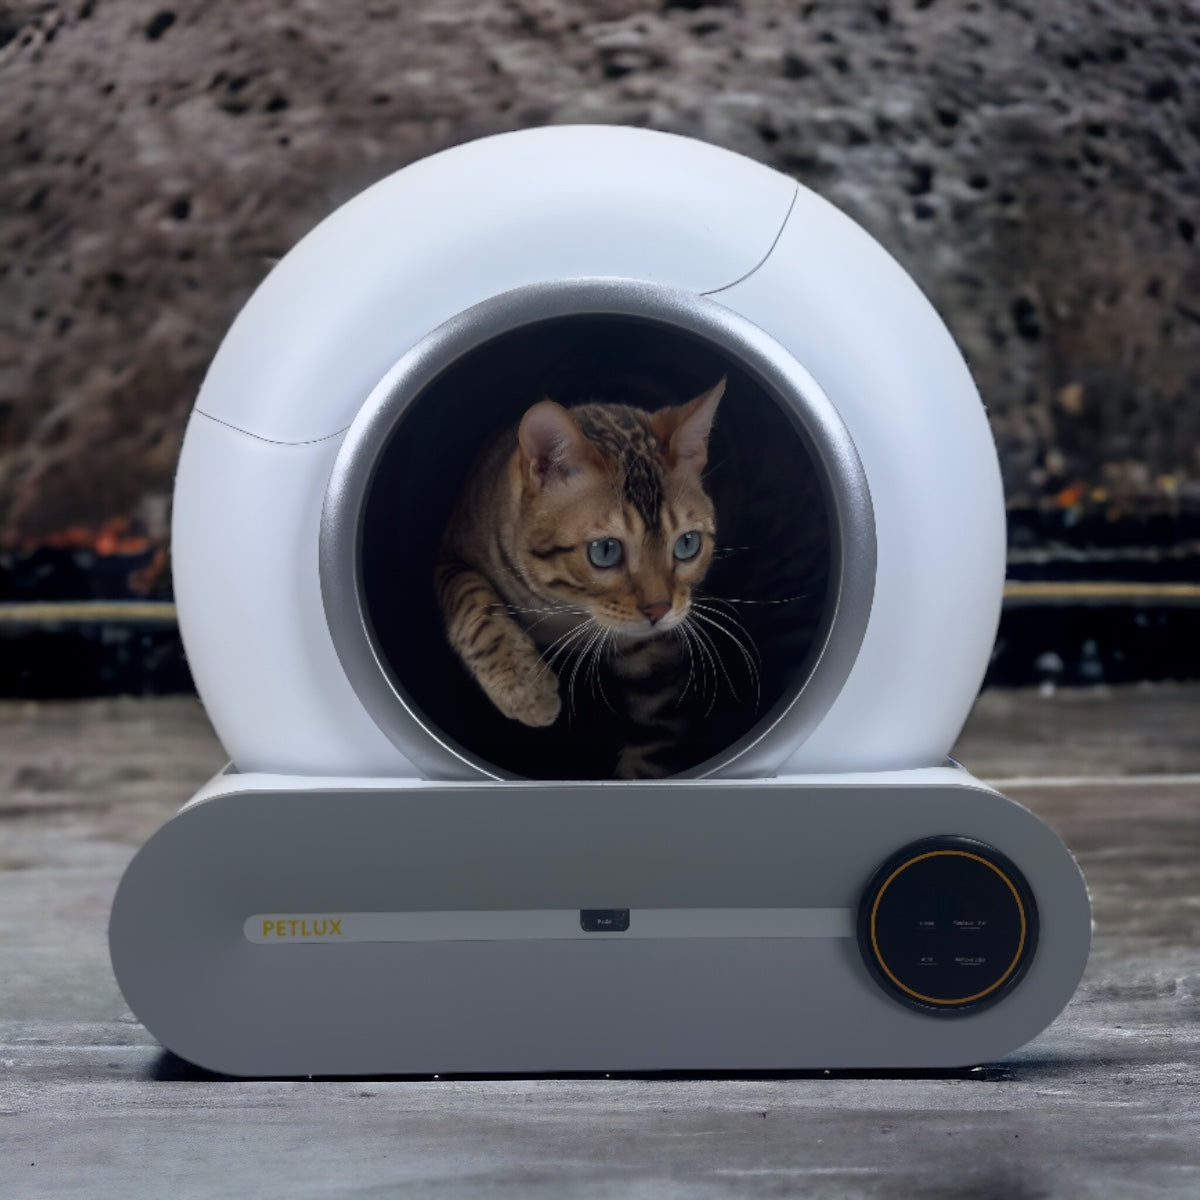 De Innovatieve Automatische Kattenbak van Petlux: Een Revolutie in Kattenhygiëne